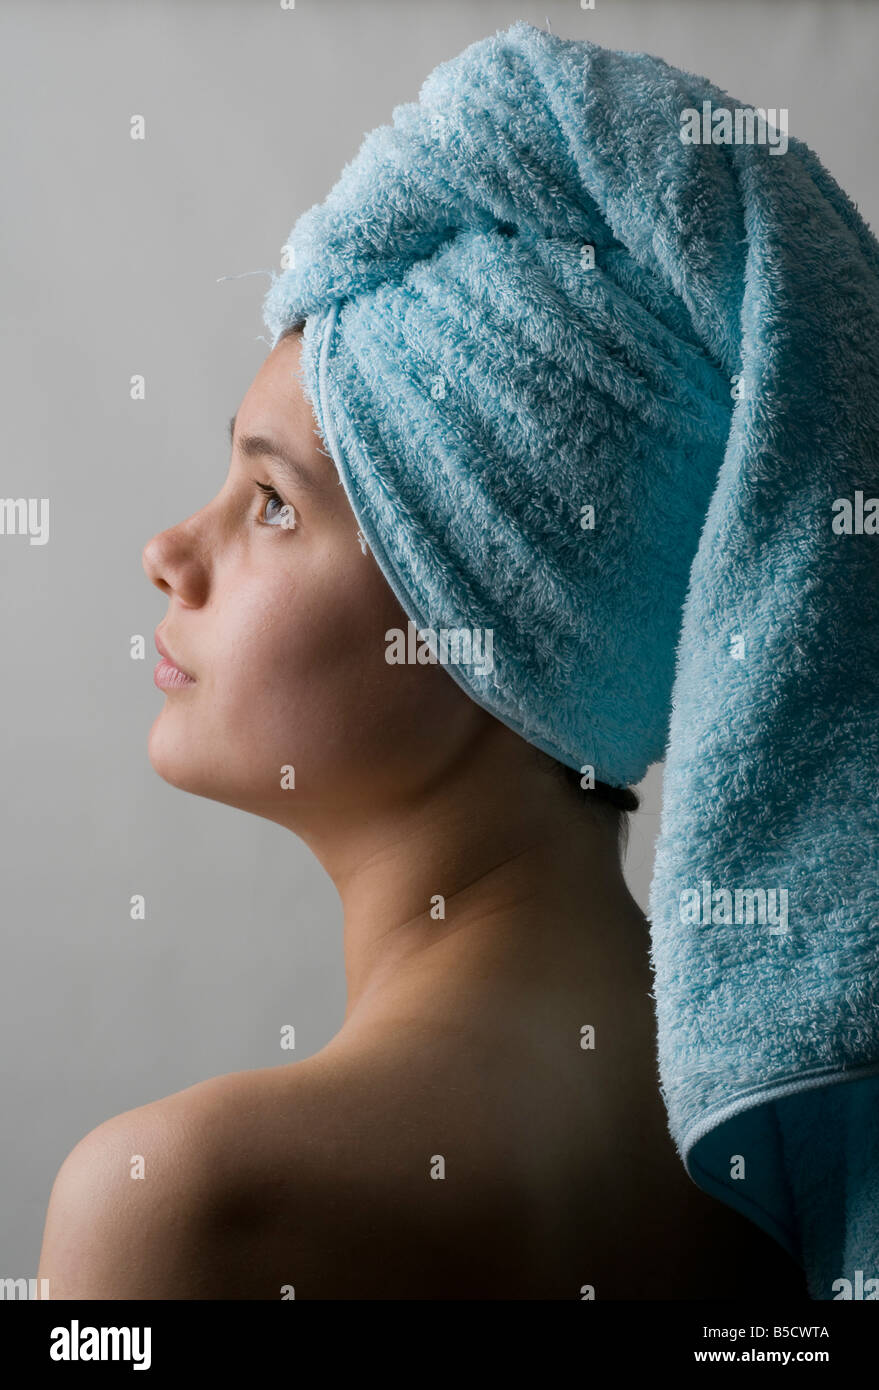 Piuttosto giovane adolescente con la testa avvolta in un asciugamano dopo il lavaggio i capelli Foto Stock